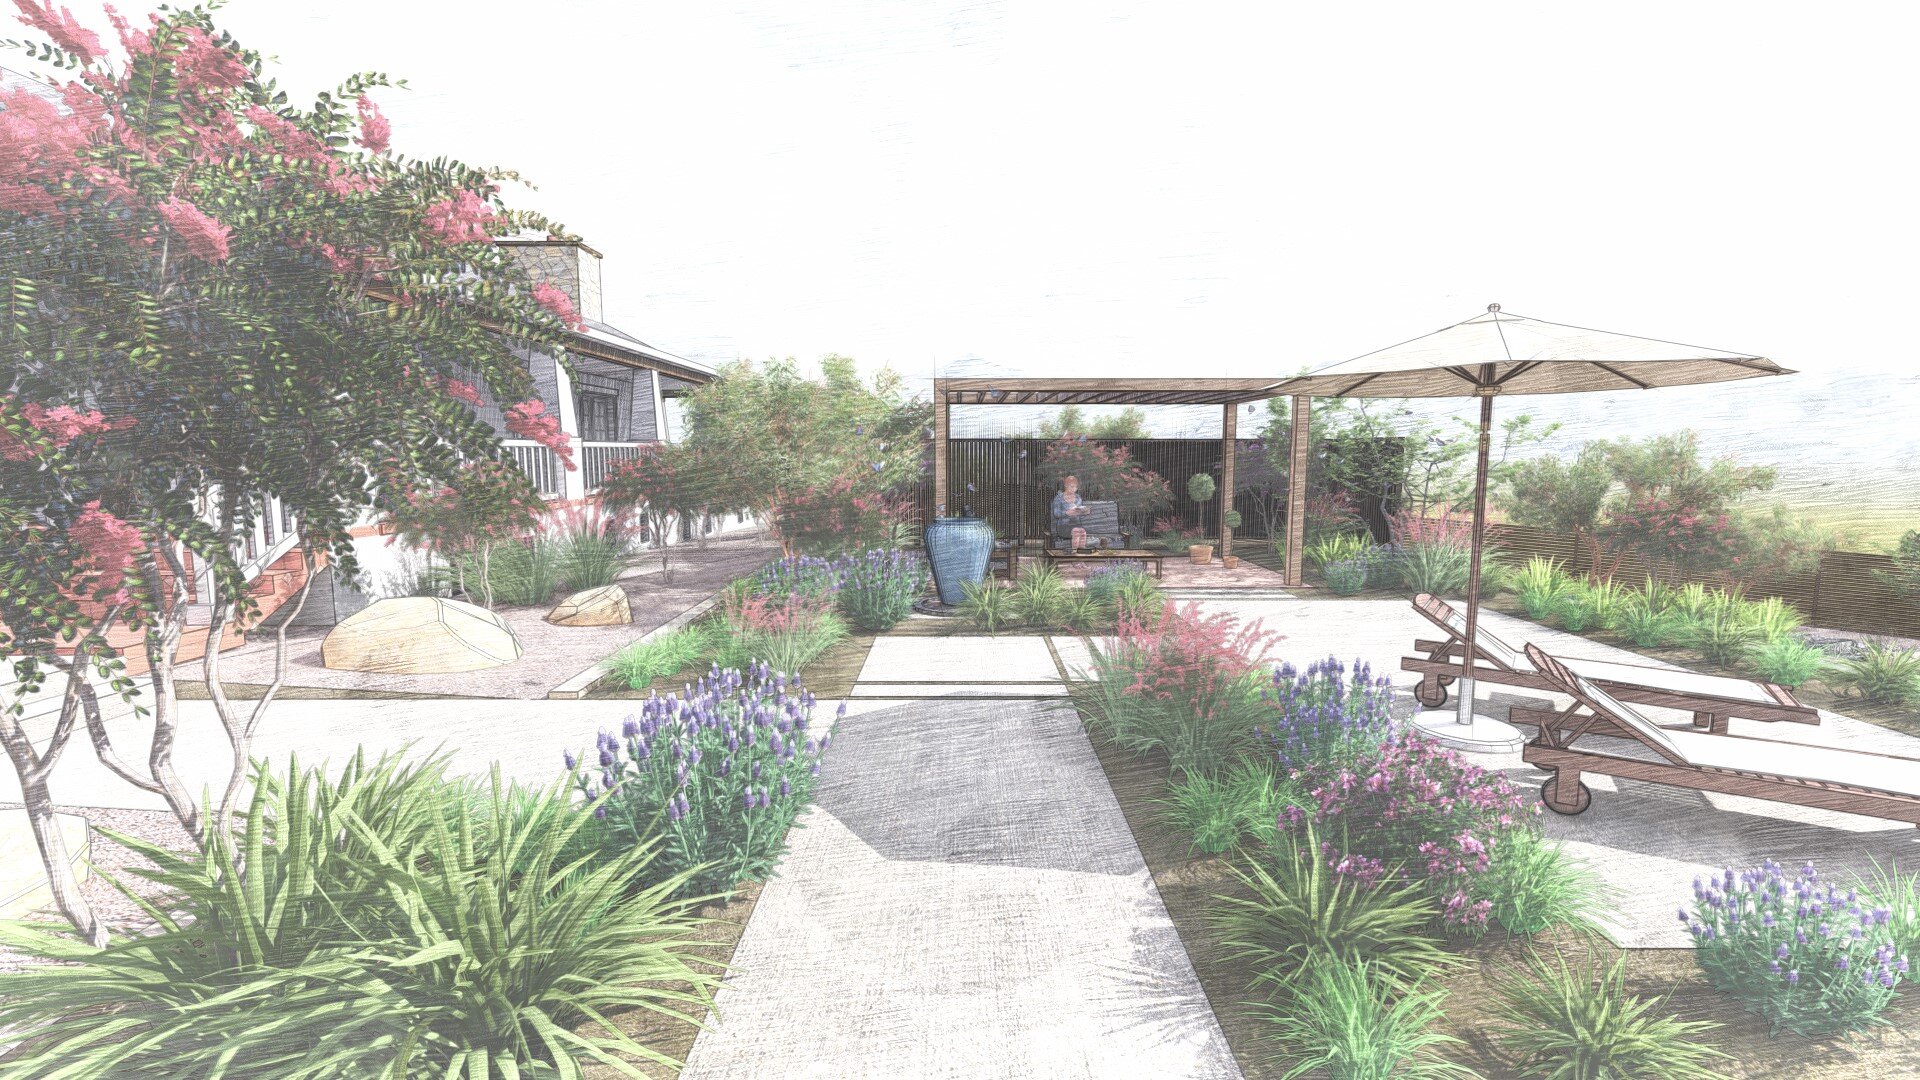 Conemporary Living Garden Design - Fairbanks Ranch, California  (Copy)